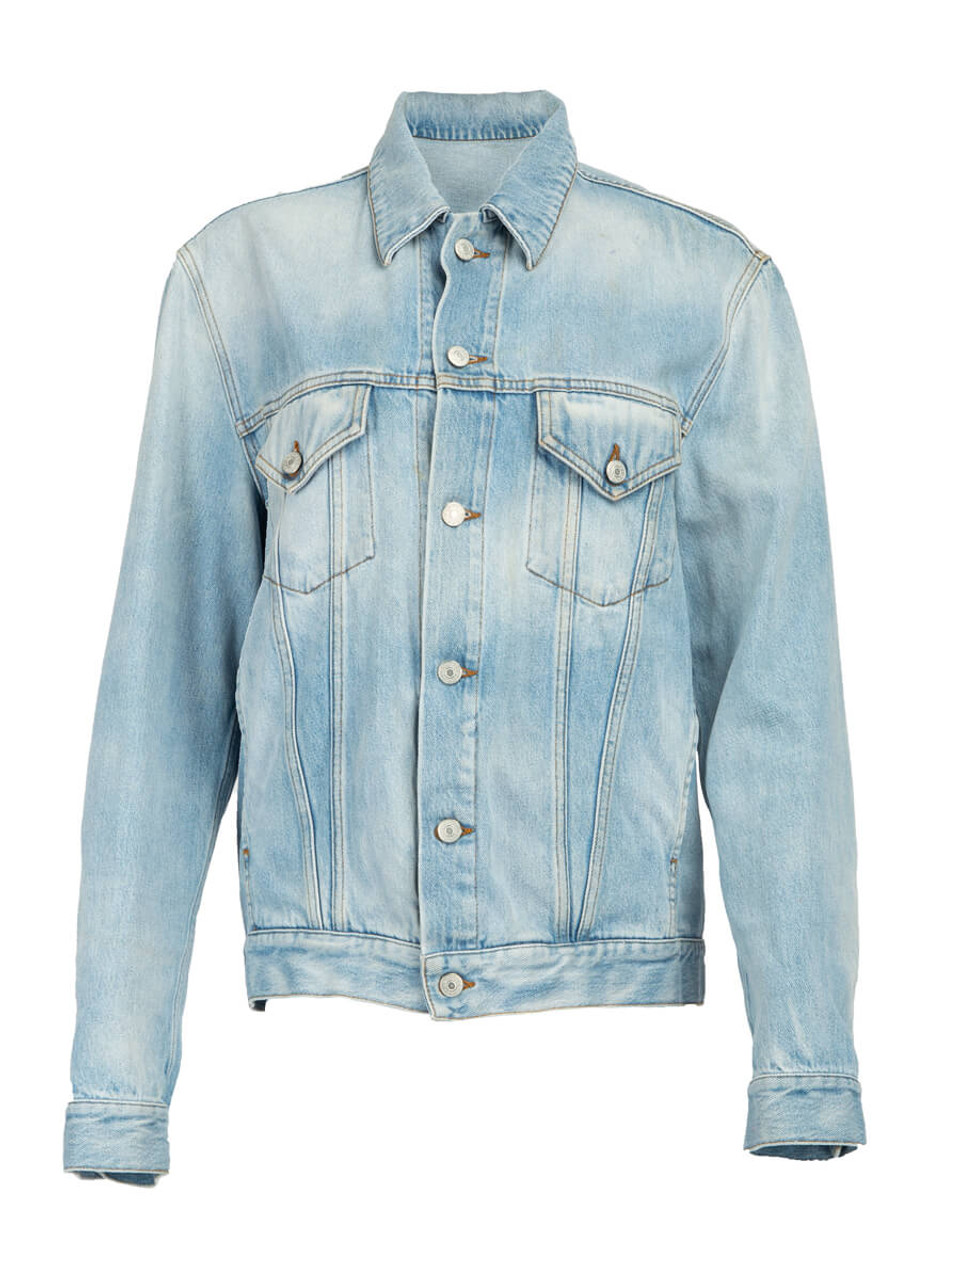 Gucci Women's L'Aveugle Par Amour Jacket, Size 16 UK, Blue, Denim